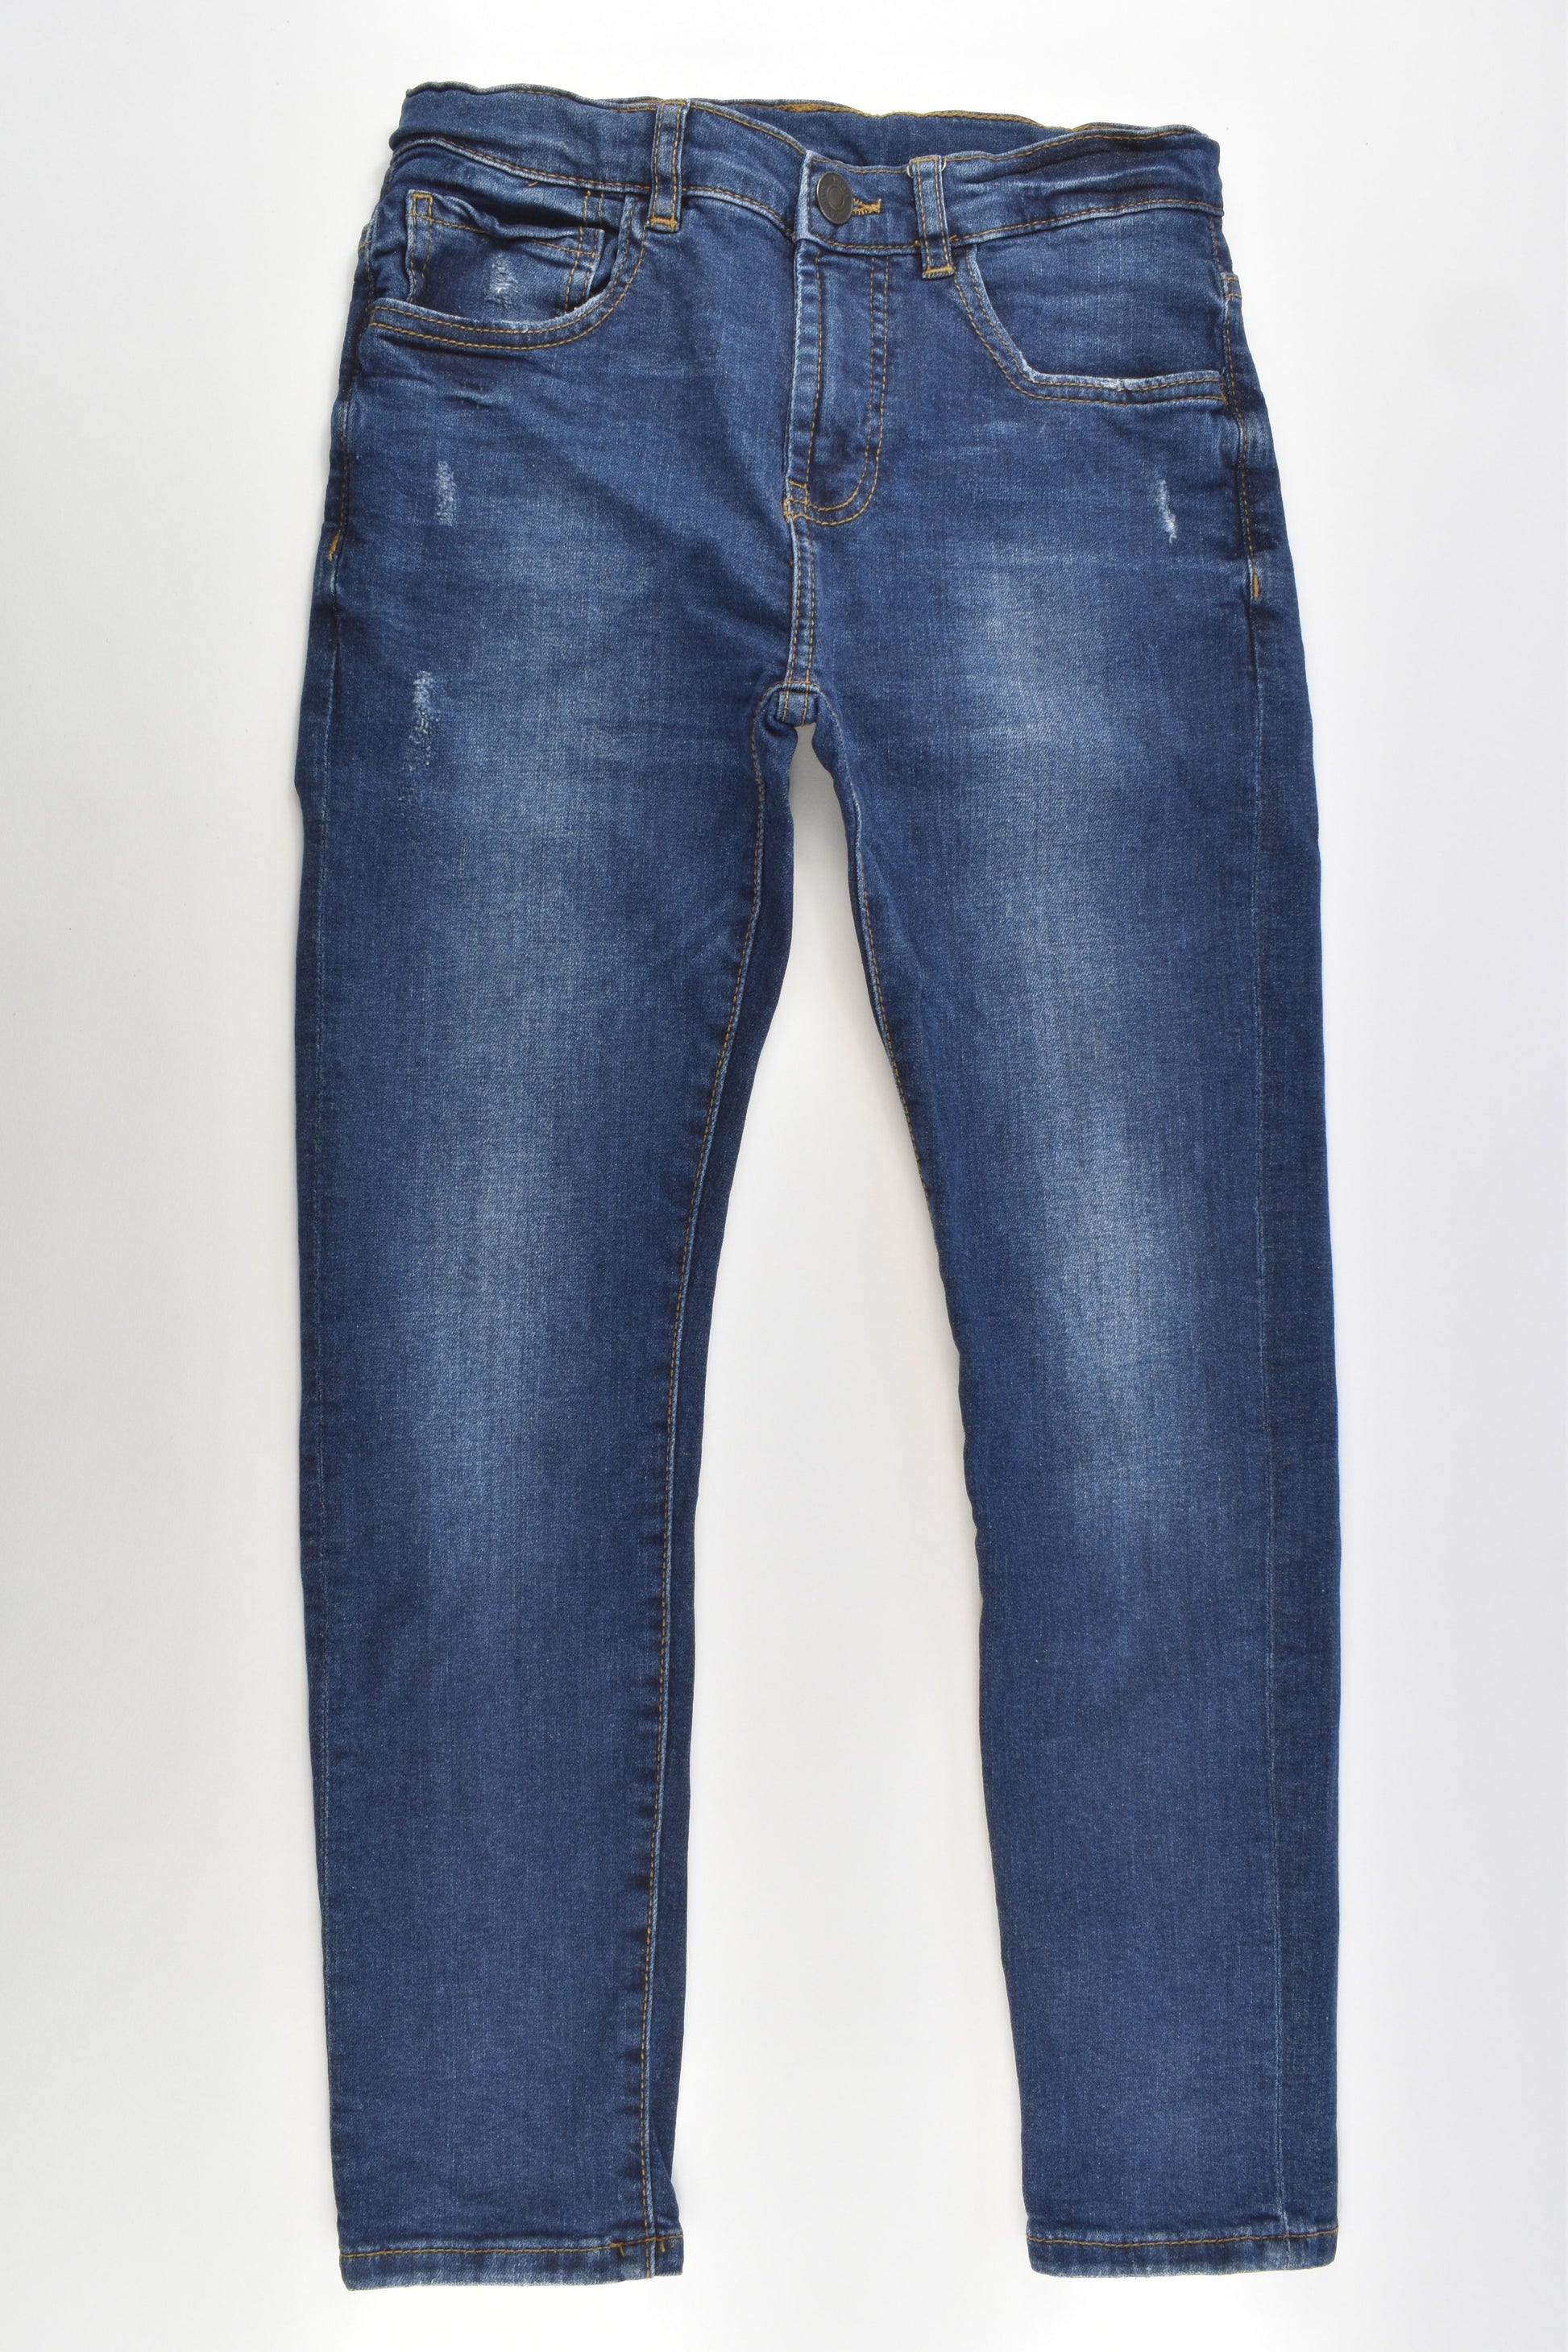 Zara Size 9 (134 cm) Stretchy Denim Pants